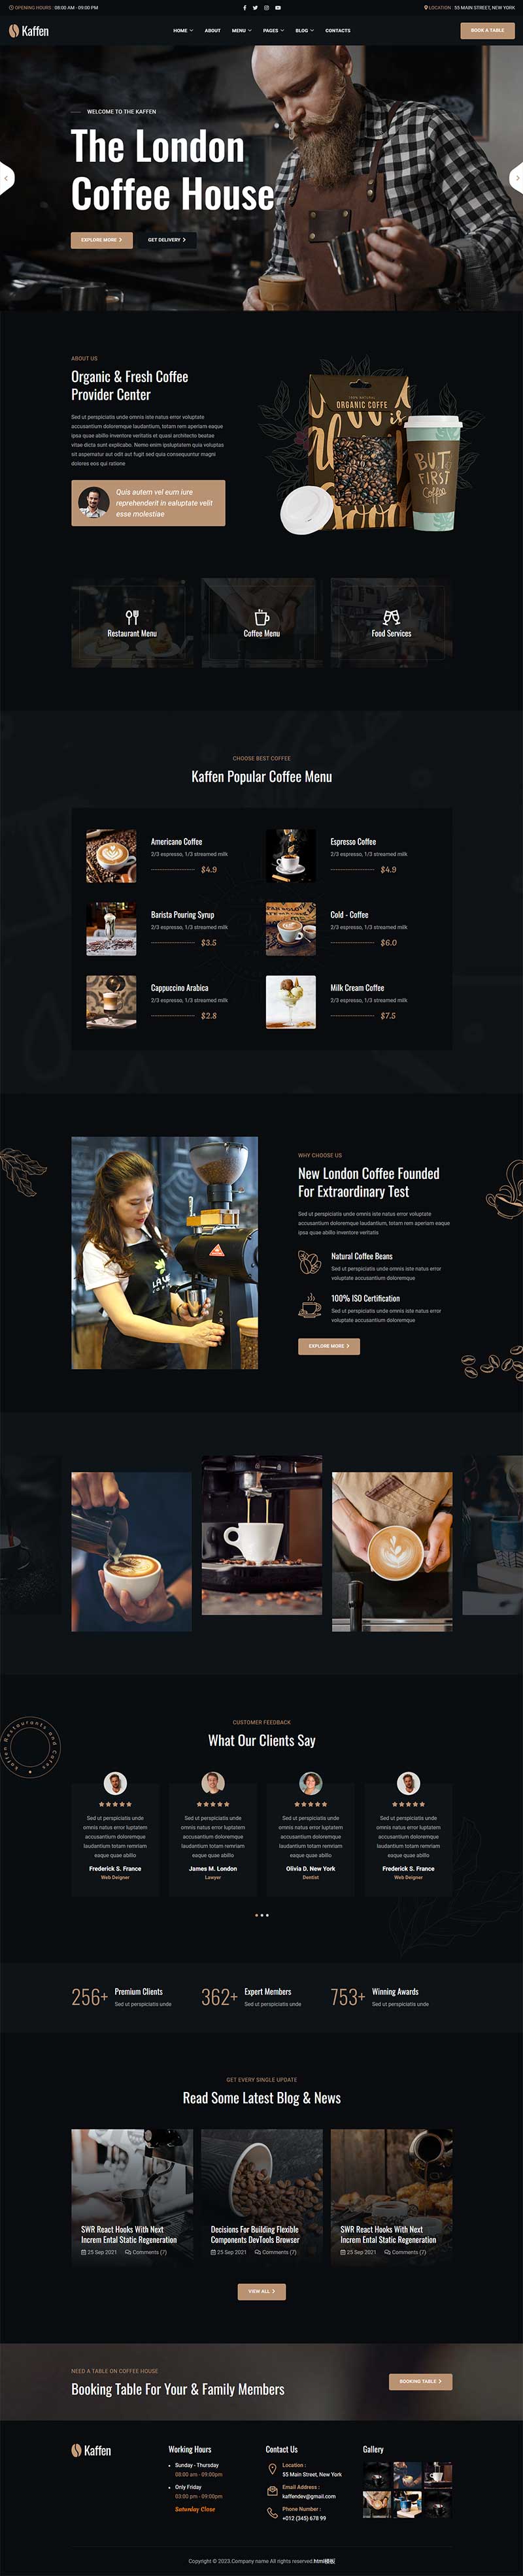 HTML5咖啡屋咖啡饮品店网站模板是一款适合从事咖啡饮品店服务行业宣传网站模板下载。